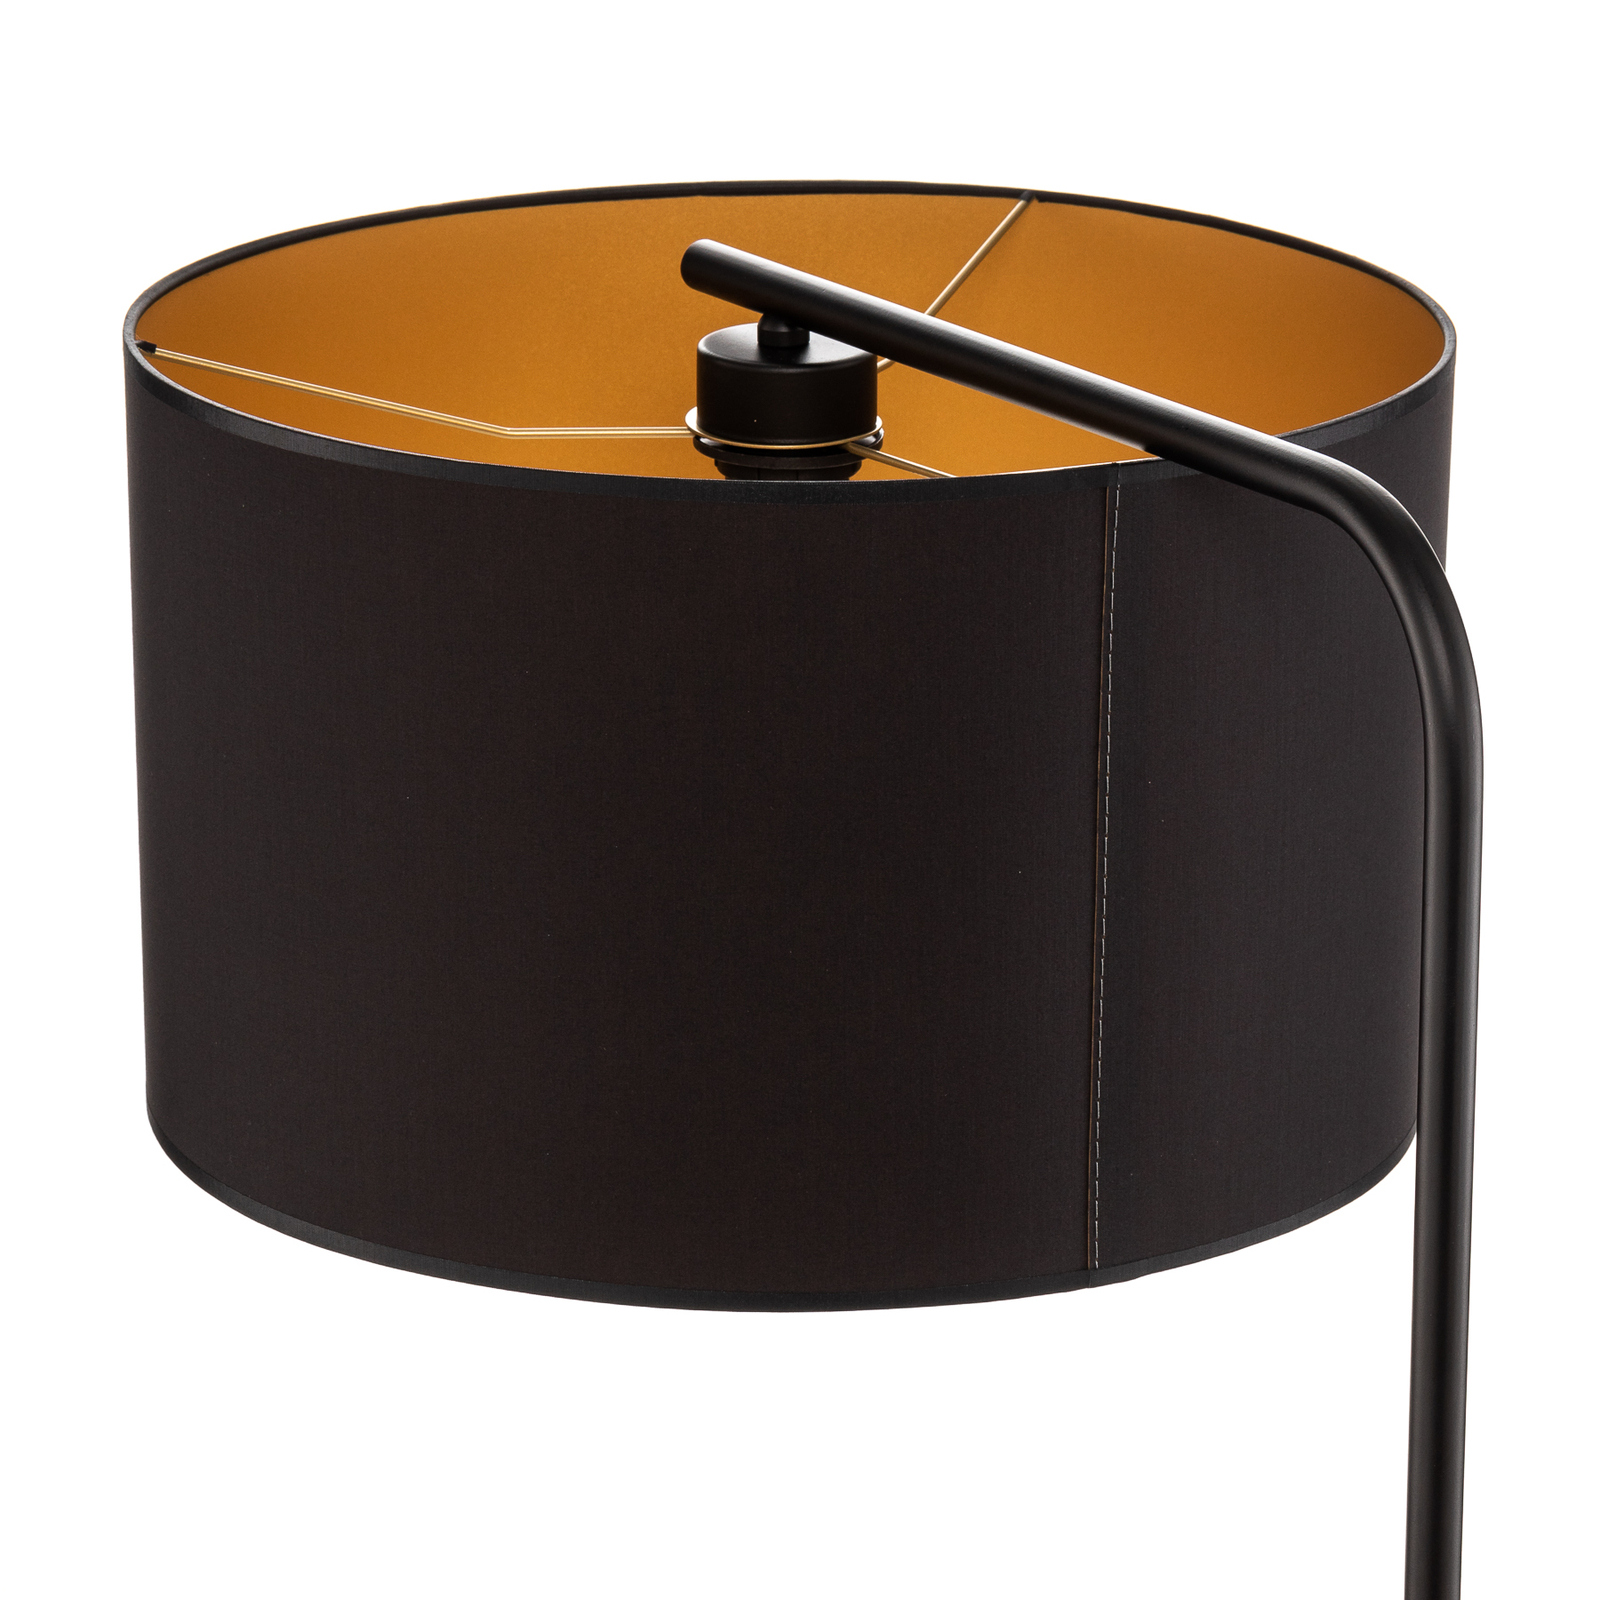 Grindų šviestuvas "Soho", cilindro formos, išlenktas, juodas/auksinis